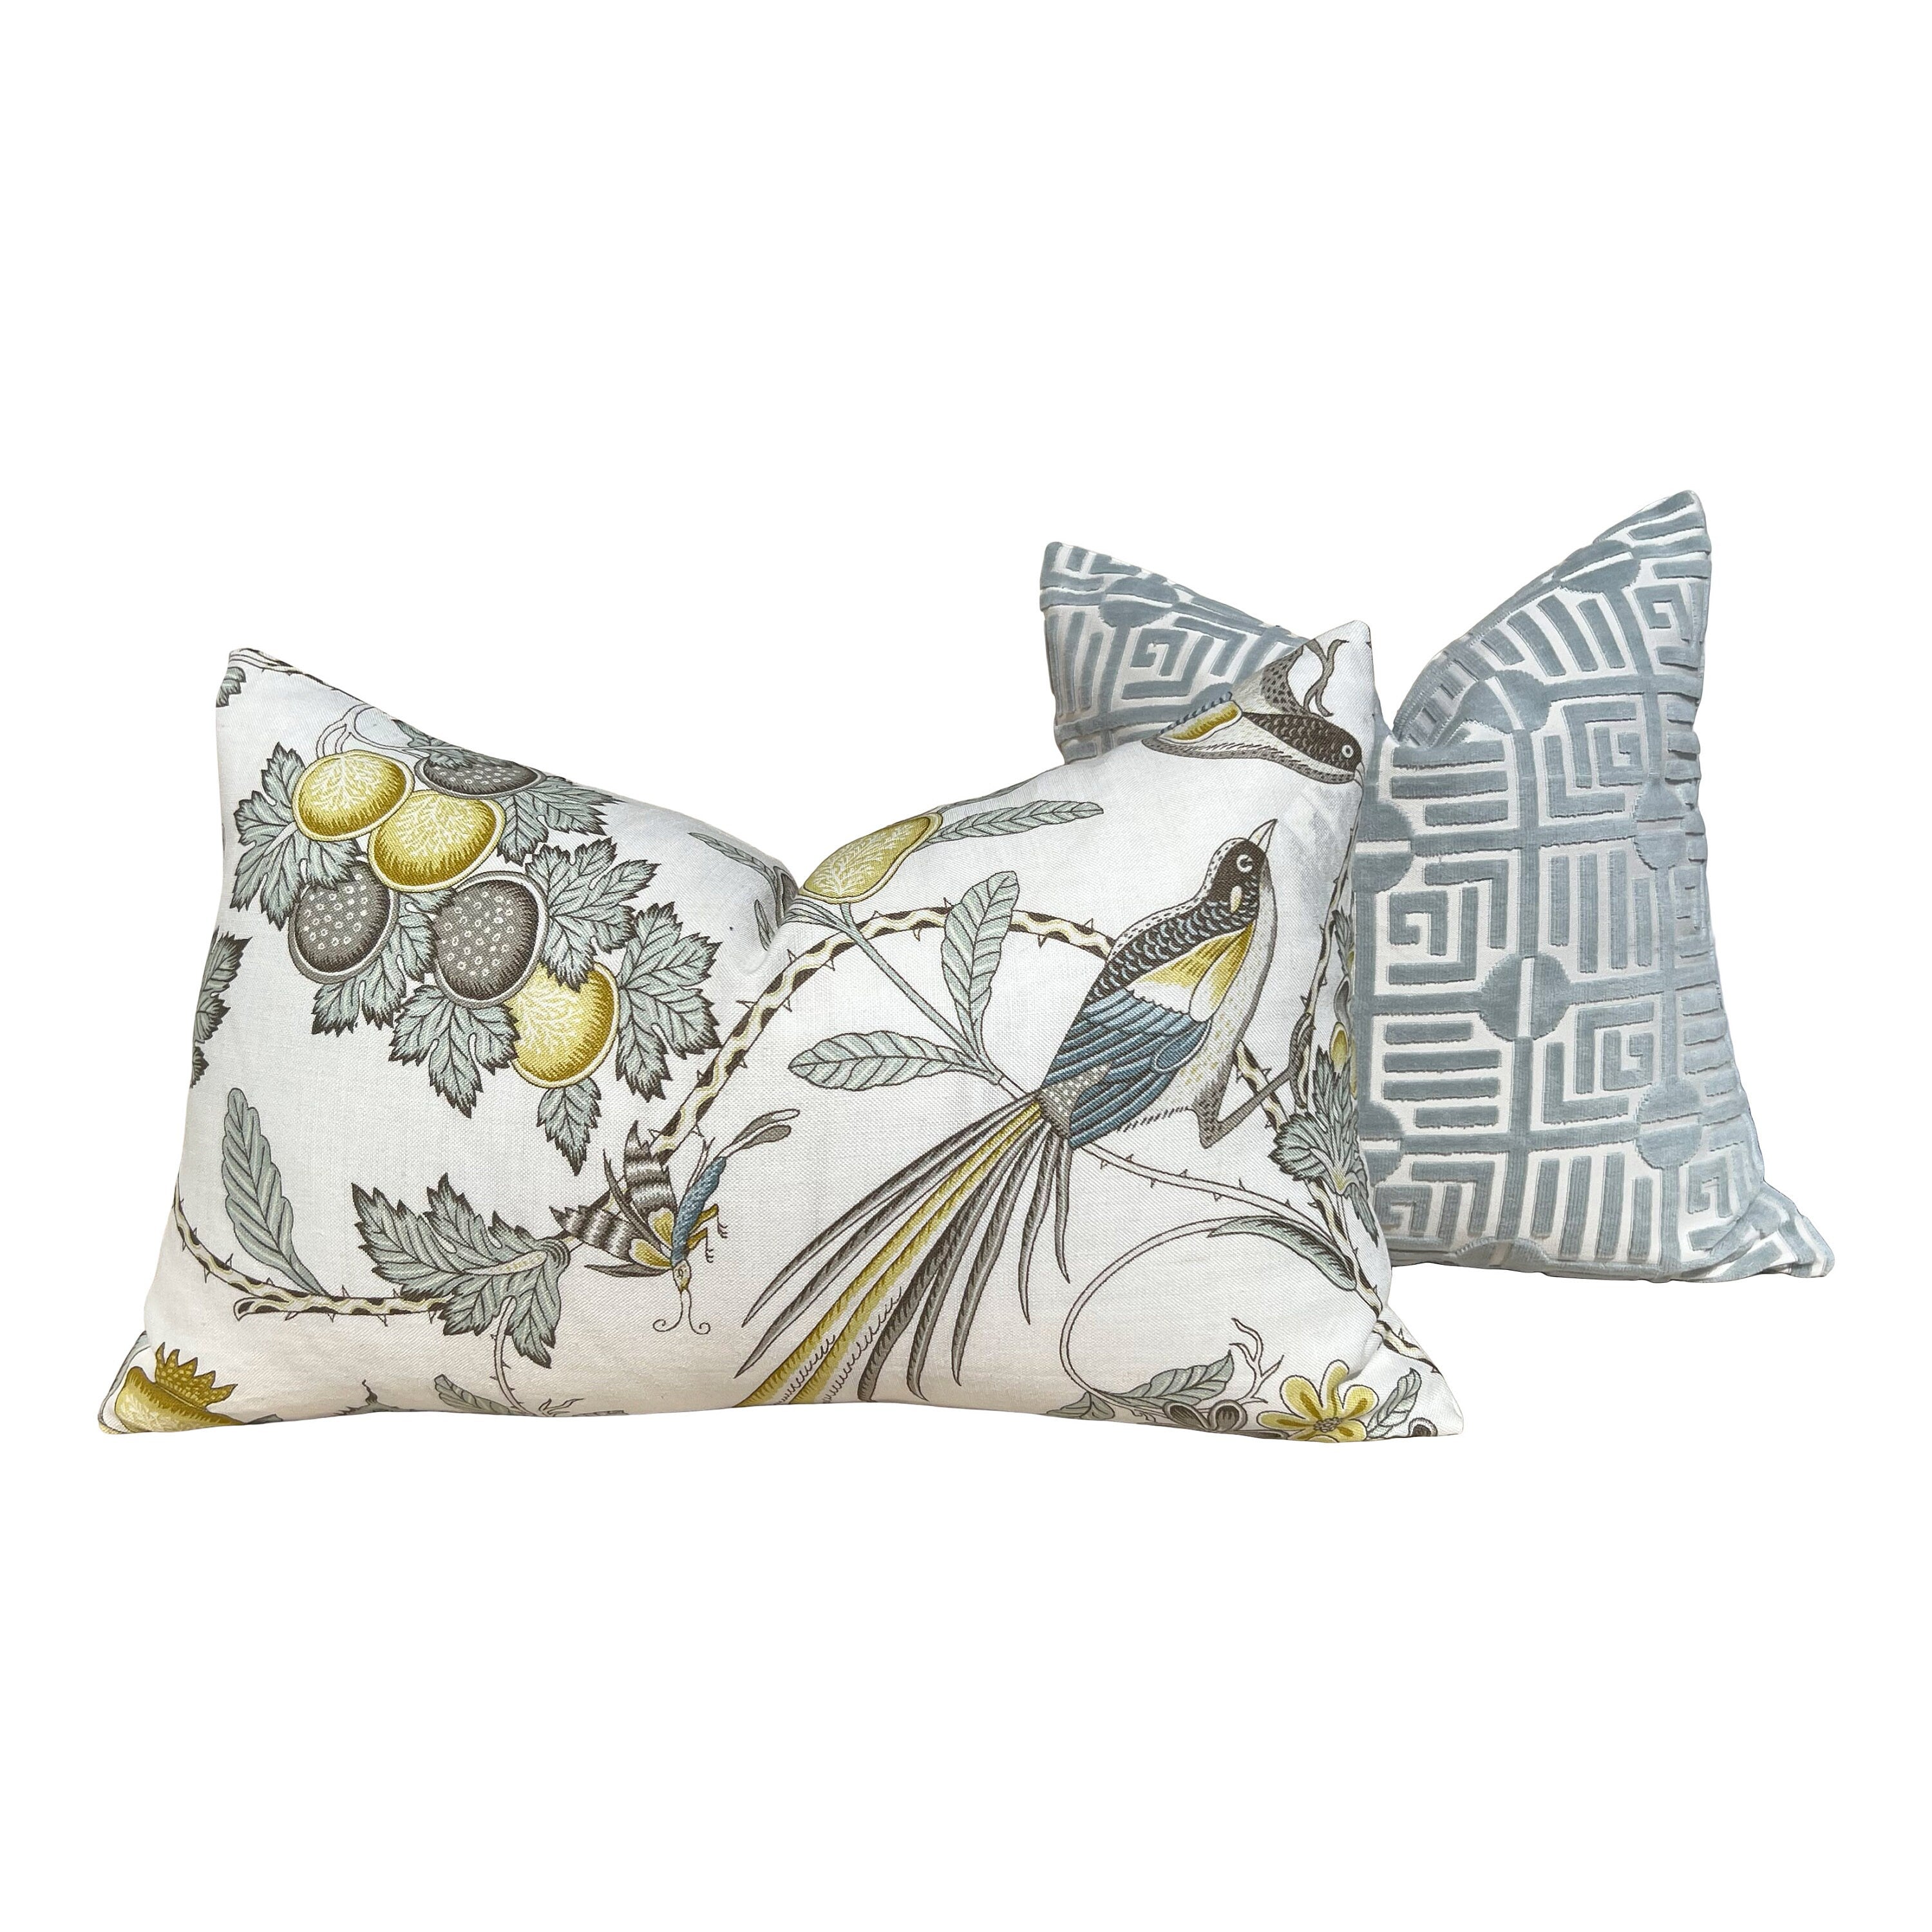 Schumacher Campagne Pillow in Spa Blue. Lumbar Linen Pillow, Designer Pillows, High End Pillows, Yellow Aqua Blue Pillow Case Bird Print